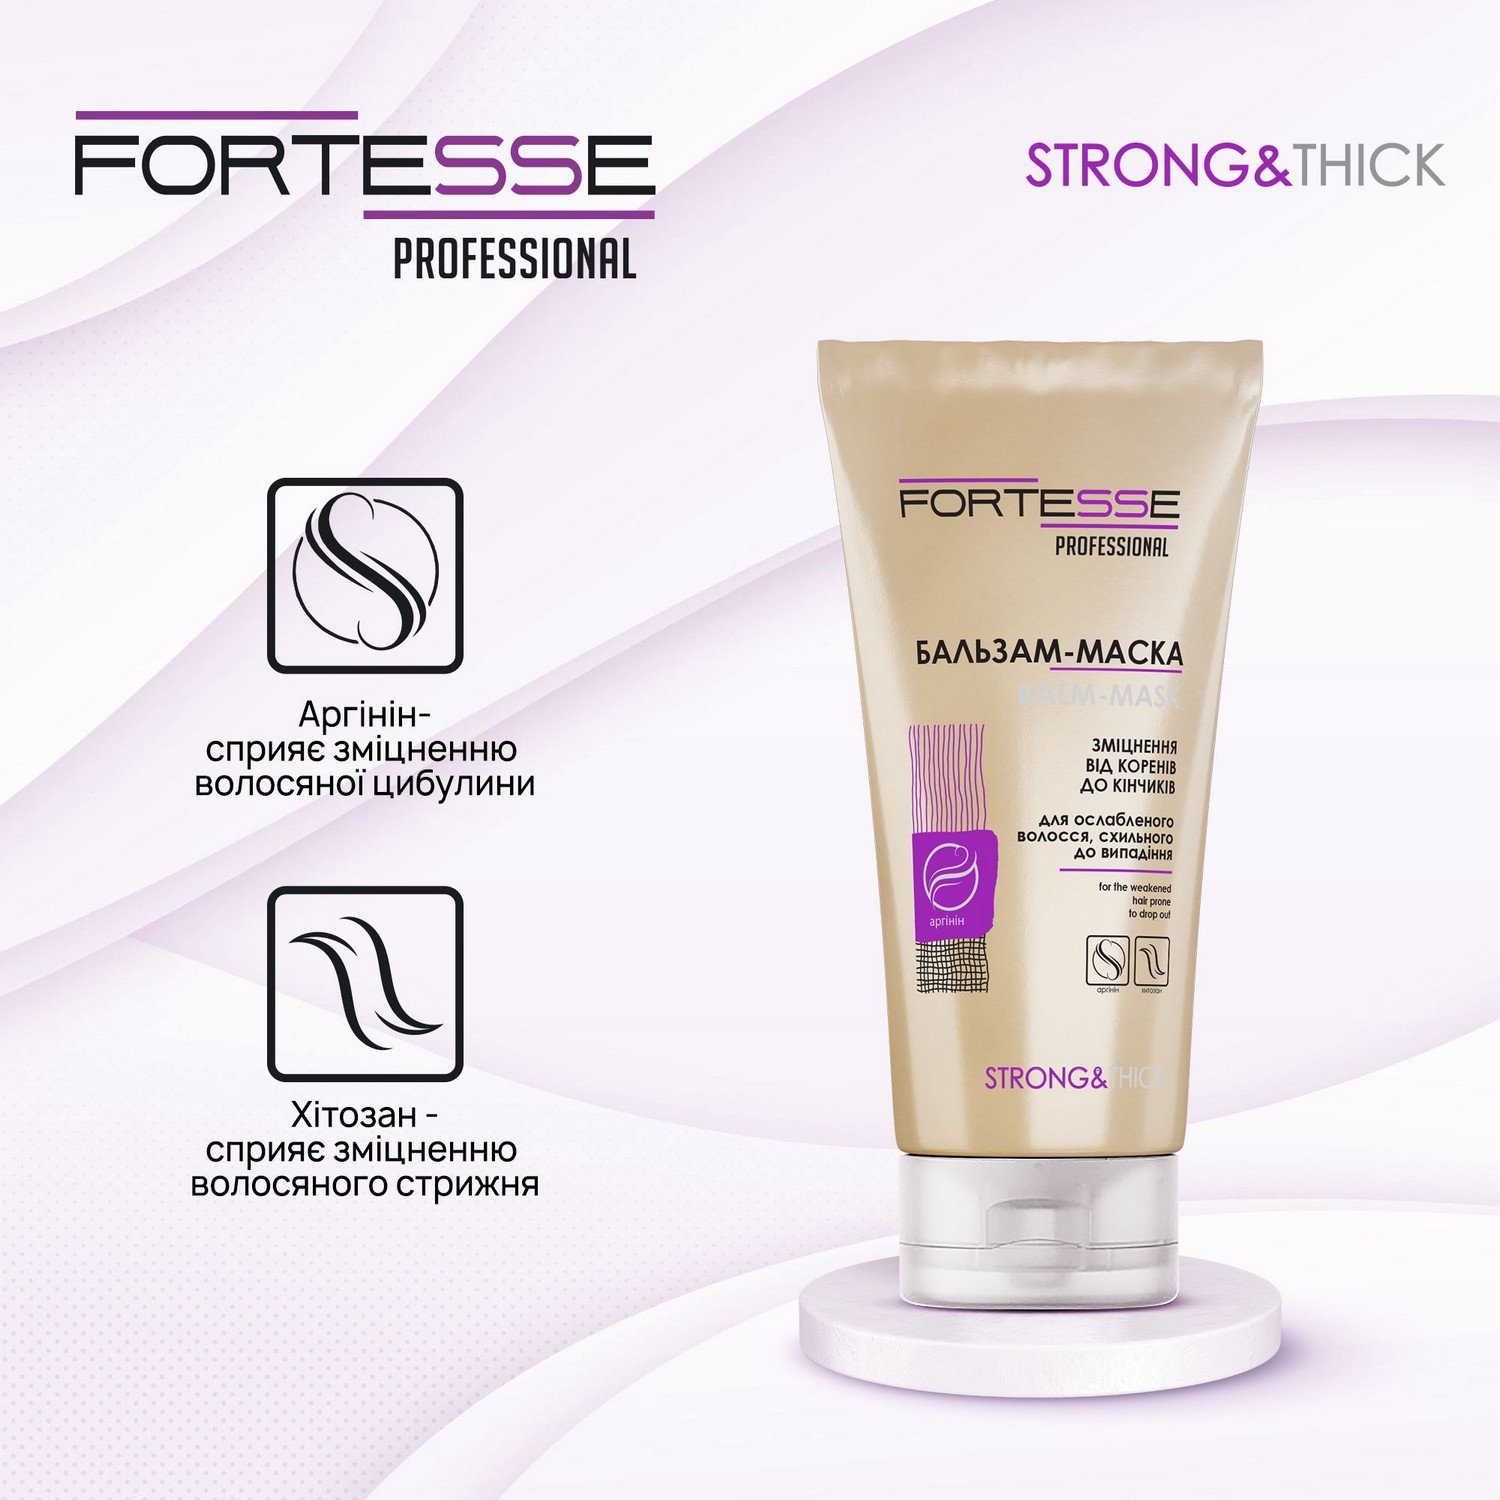 Укрепляющая бальзам-маска Fortesse Professional Strong&Thick для ослабленных волос, склонных к выпадению, 200 мл - фото 3